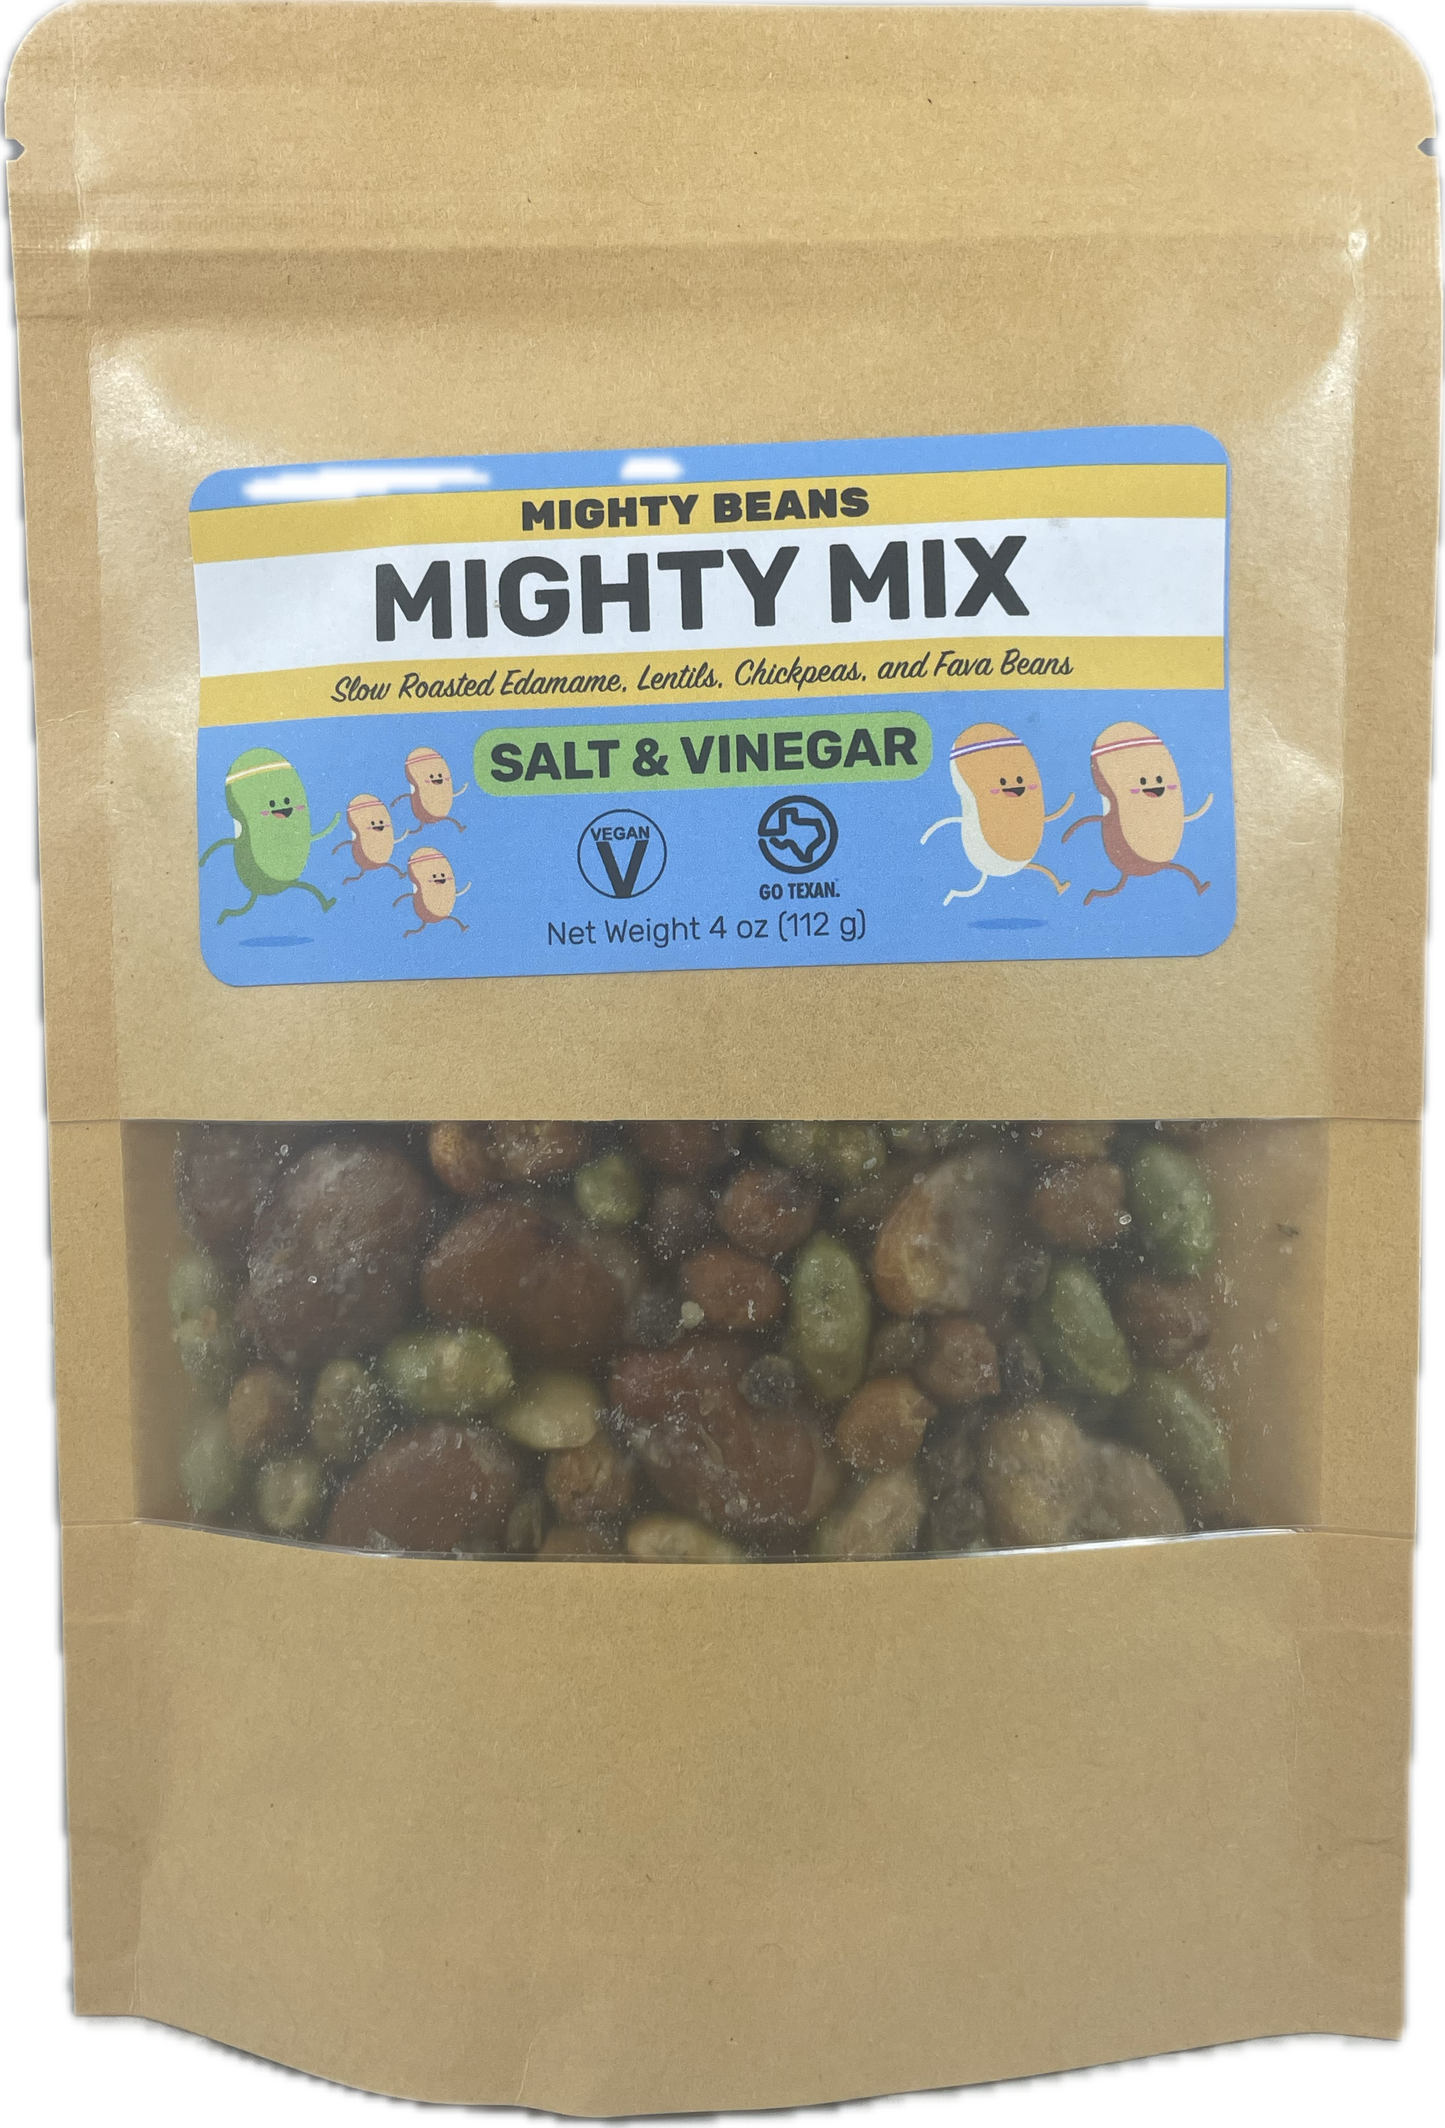 Salt & Vinegar Mighty Mix